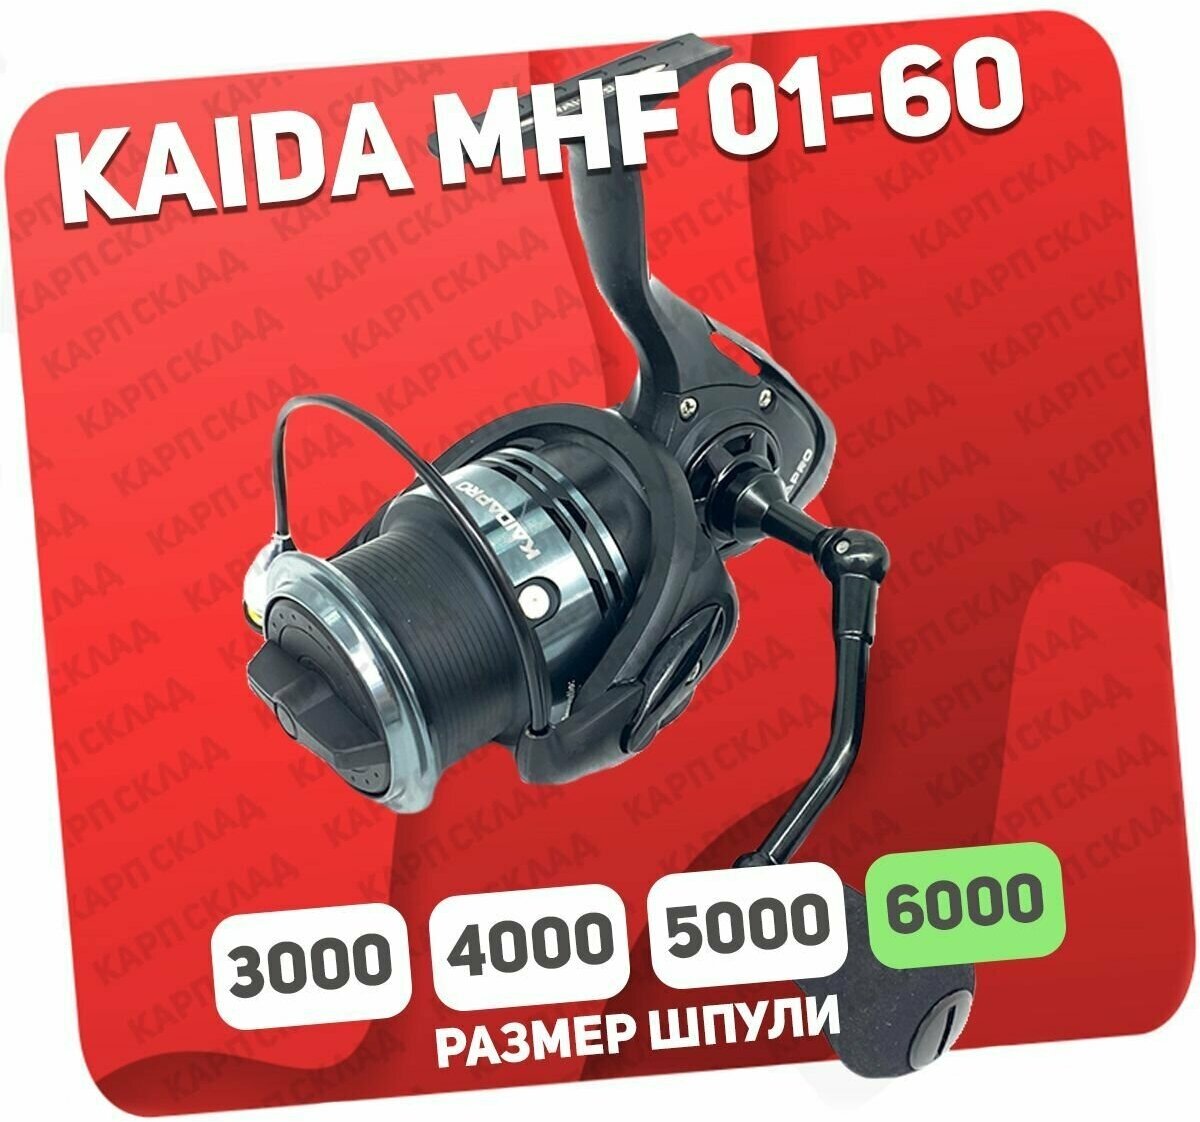 Катушка рыболовная Kaida MHF-01-60 безынерционная